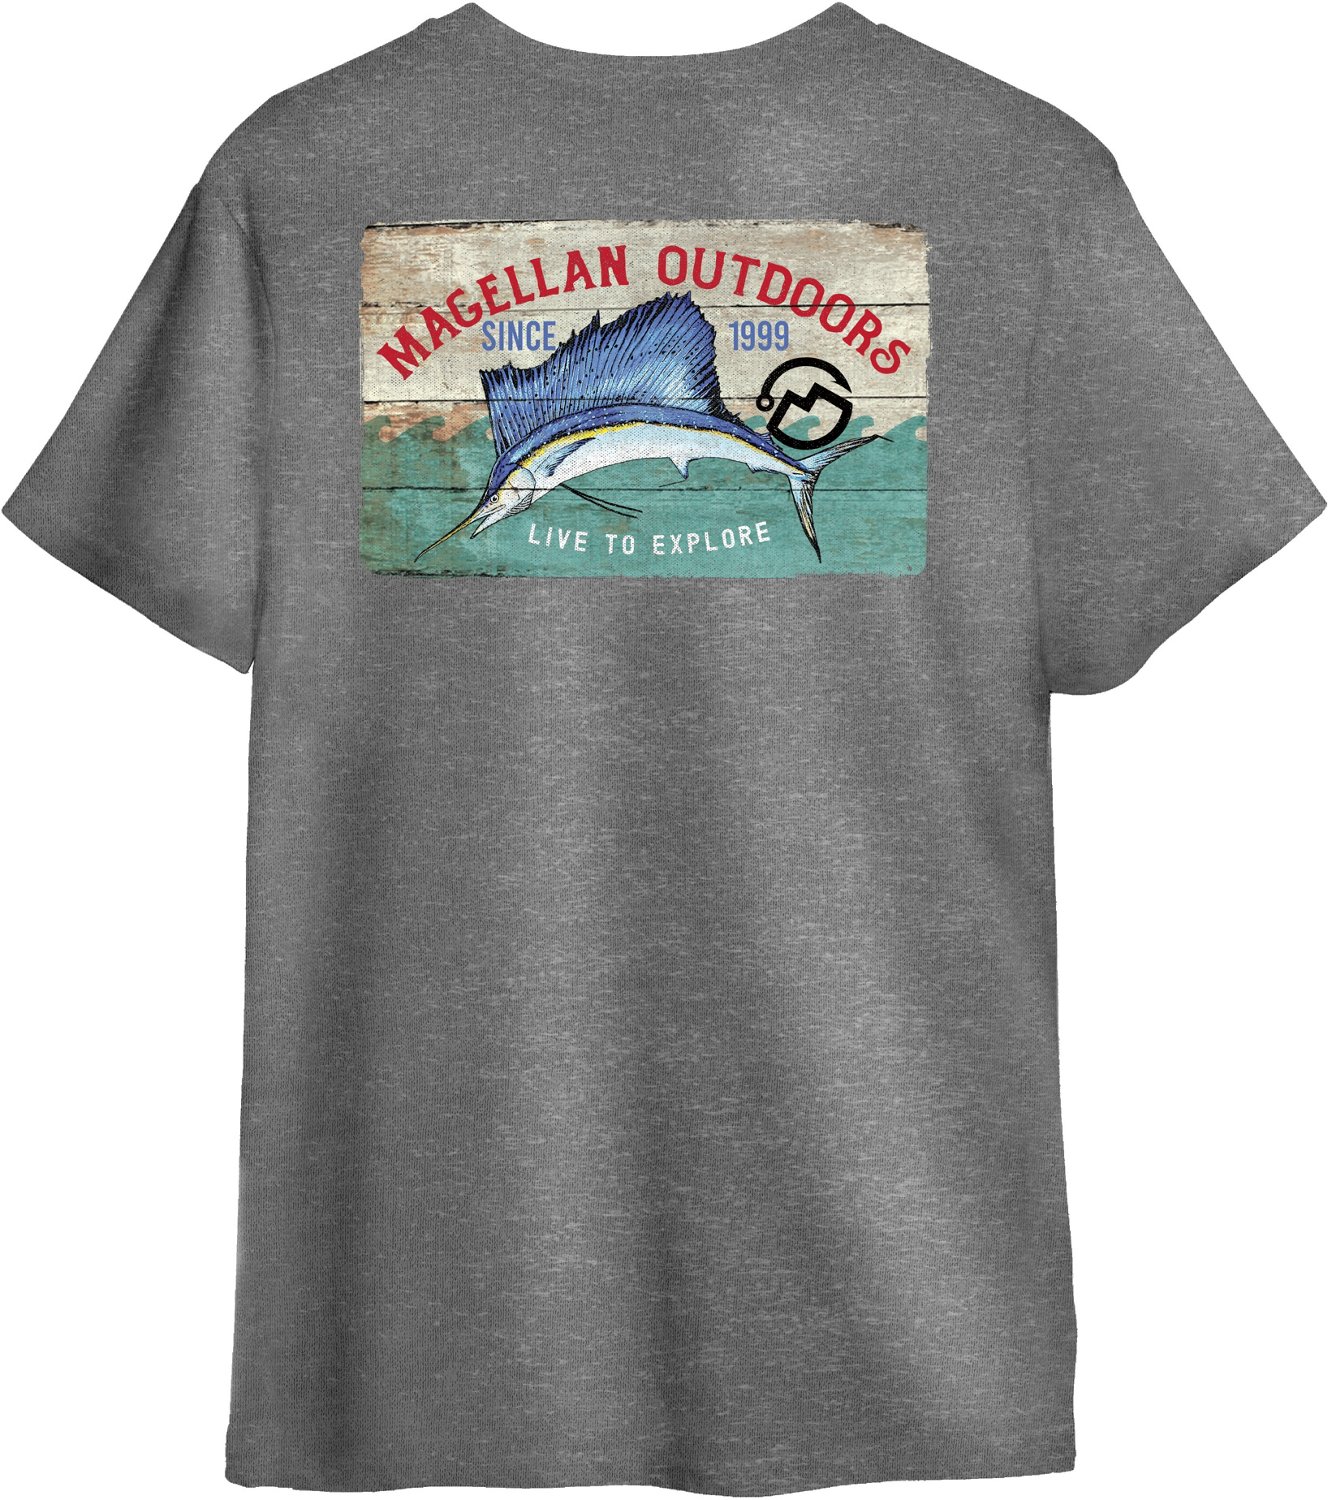 Boys Magellan fishing shirt